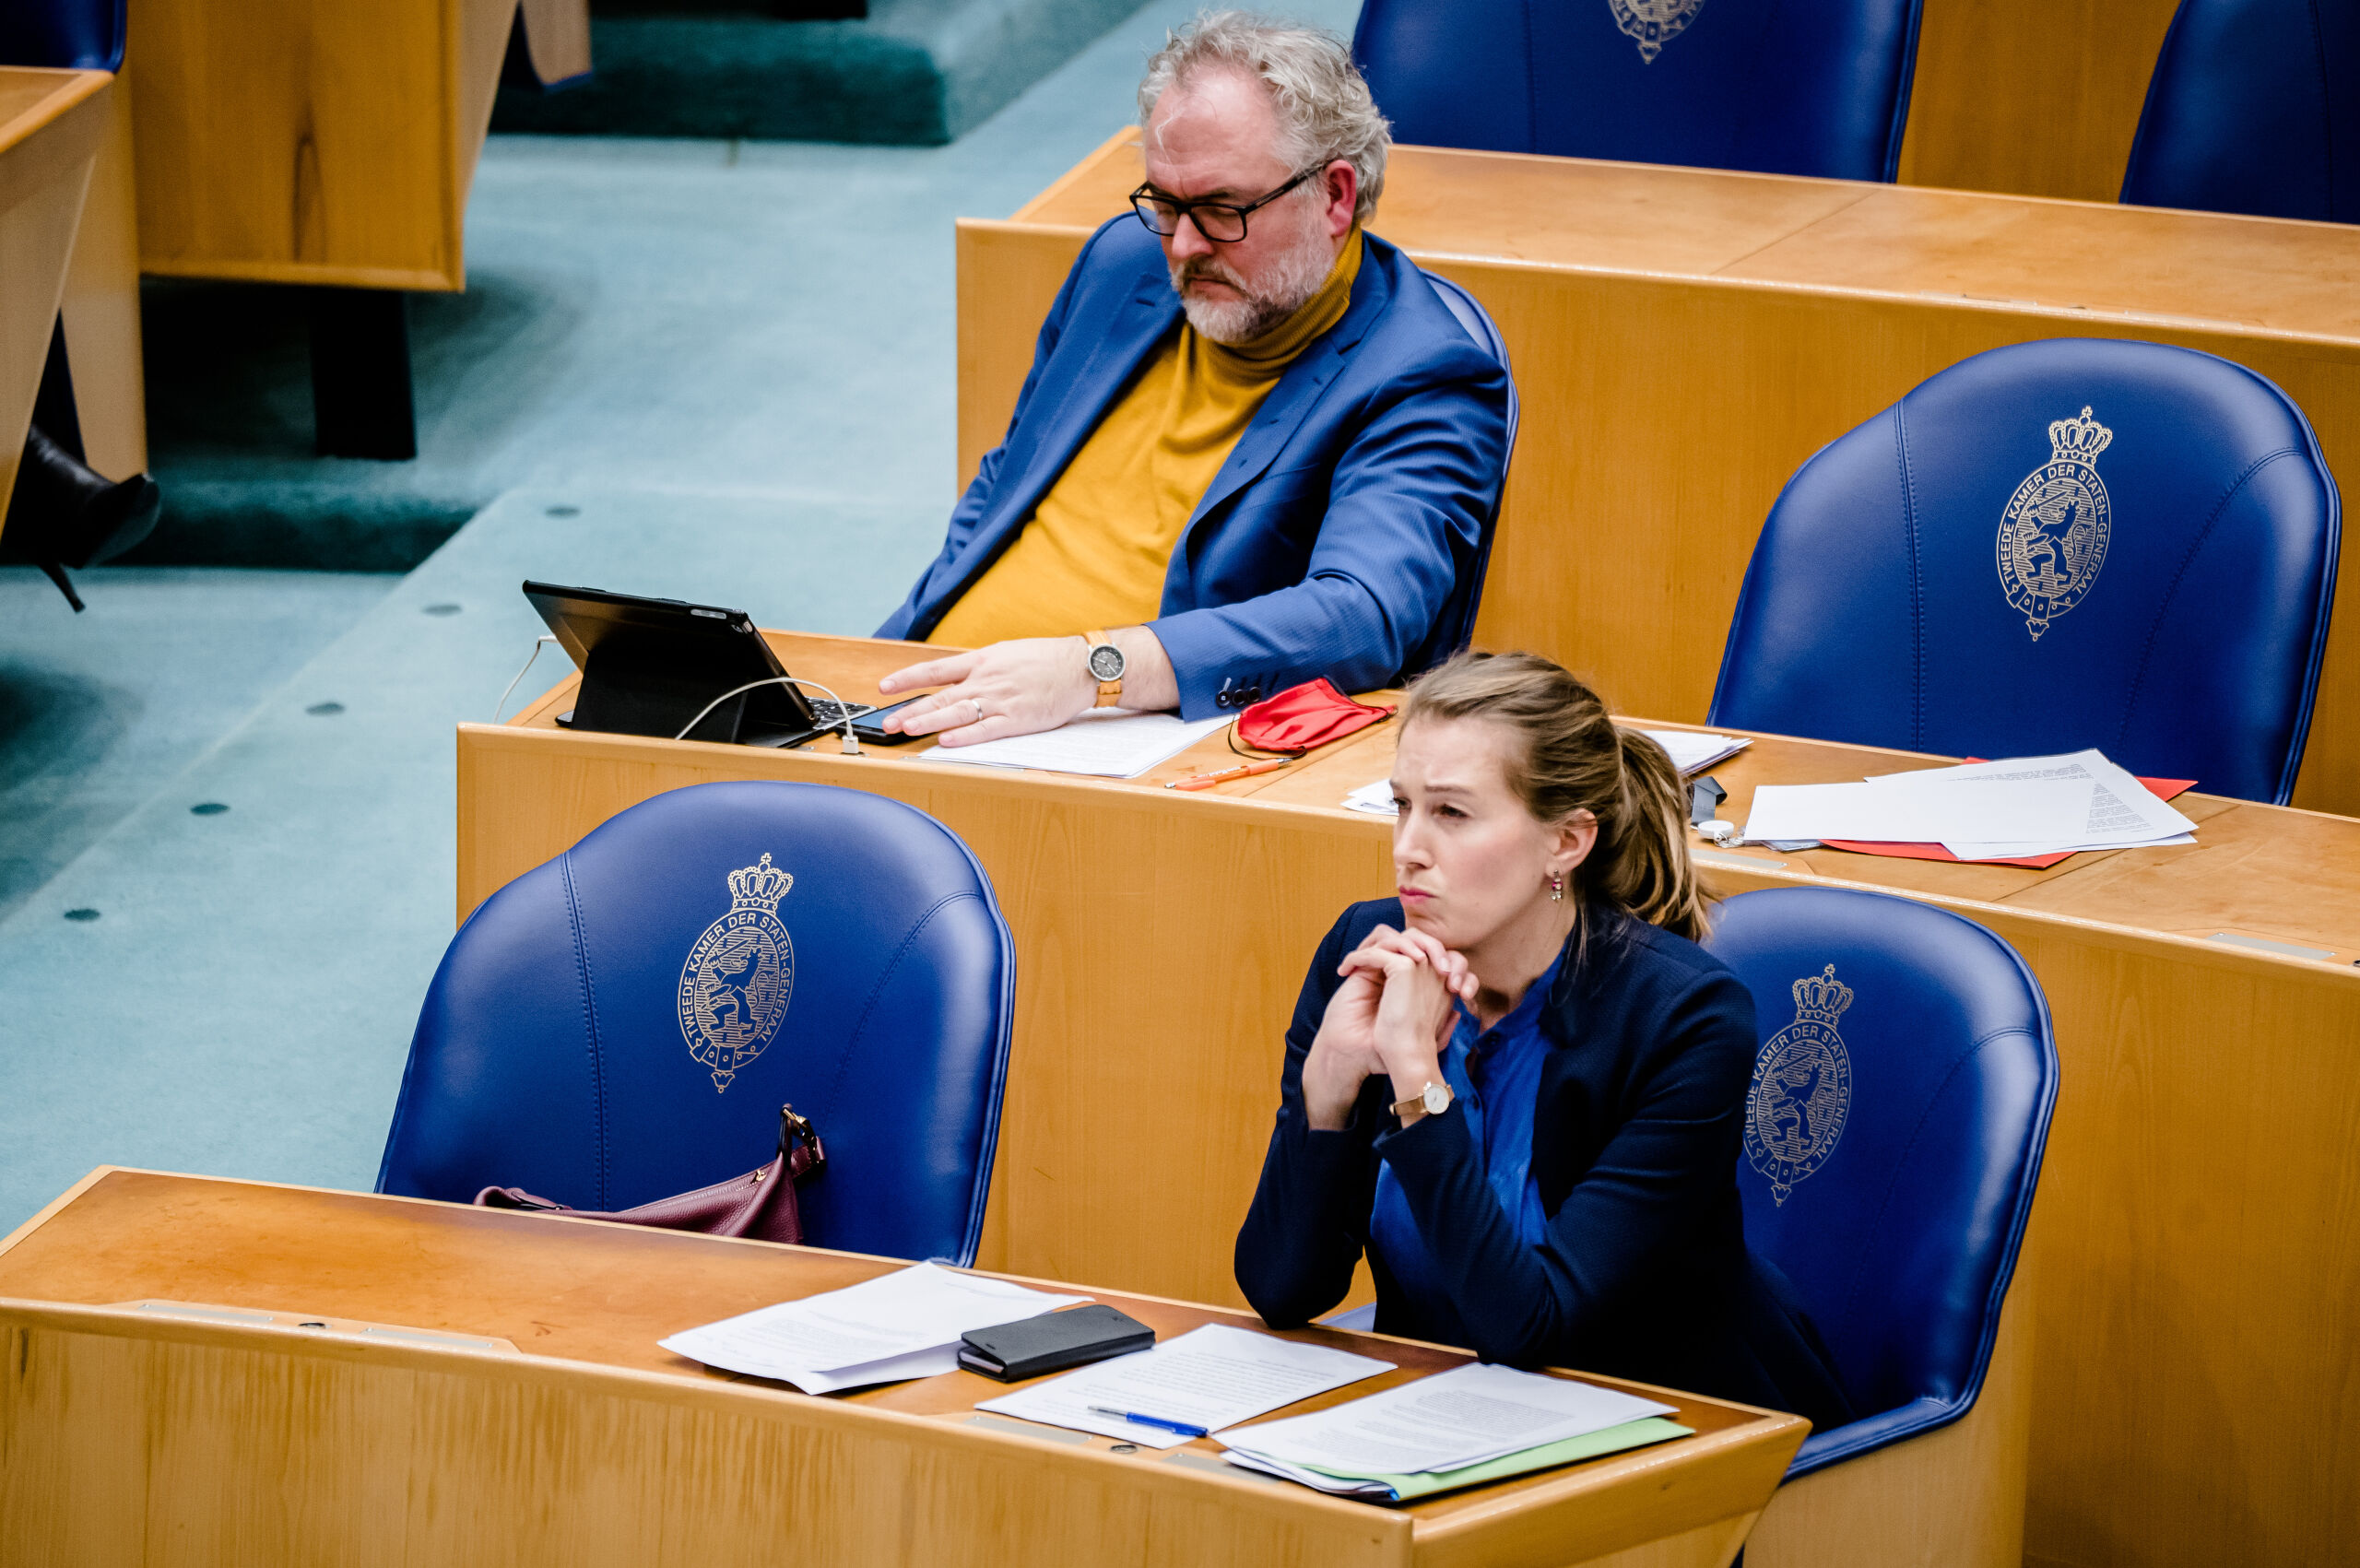  DEN HAAG - Wim-Jan Renkema (Groenlinks) en Corinne Ellemeet (Groenlinks) in de Tweede Kamer. 